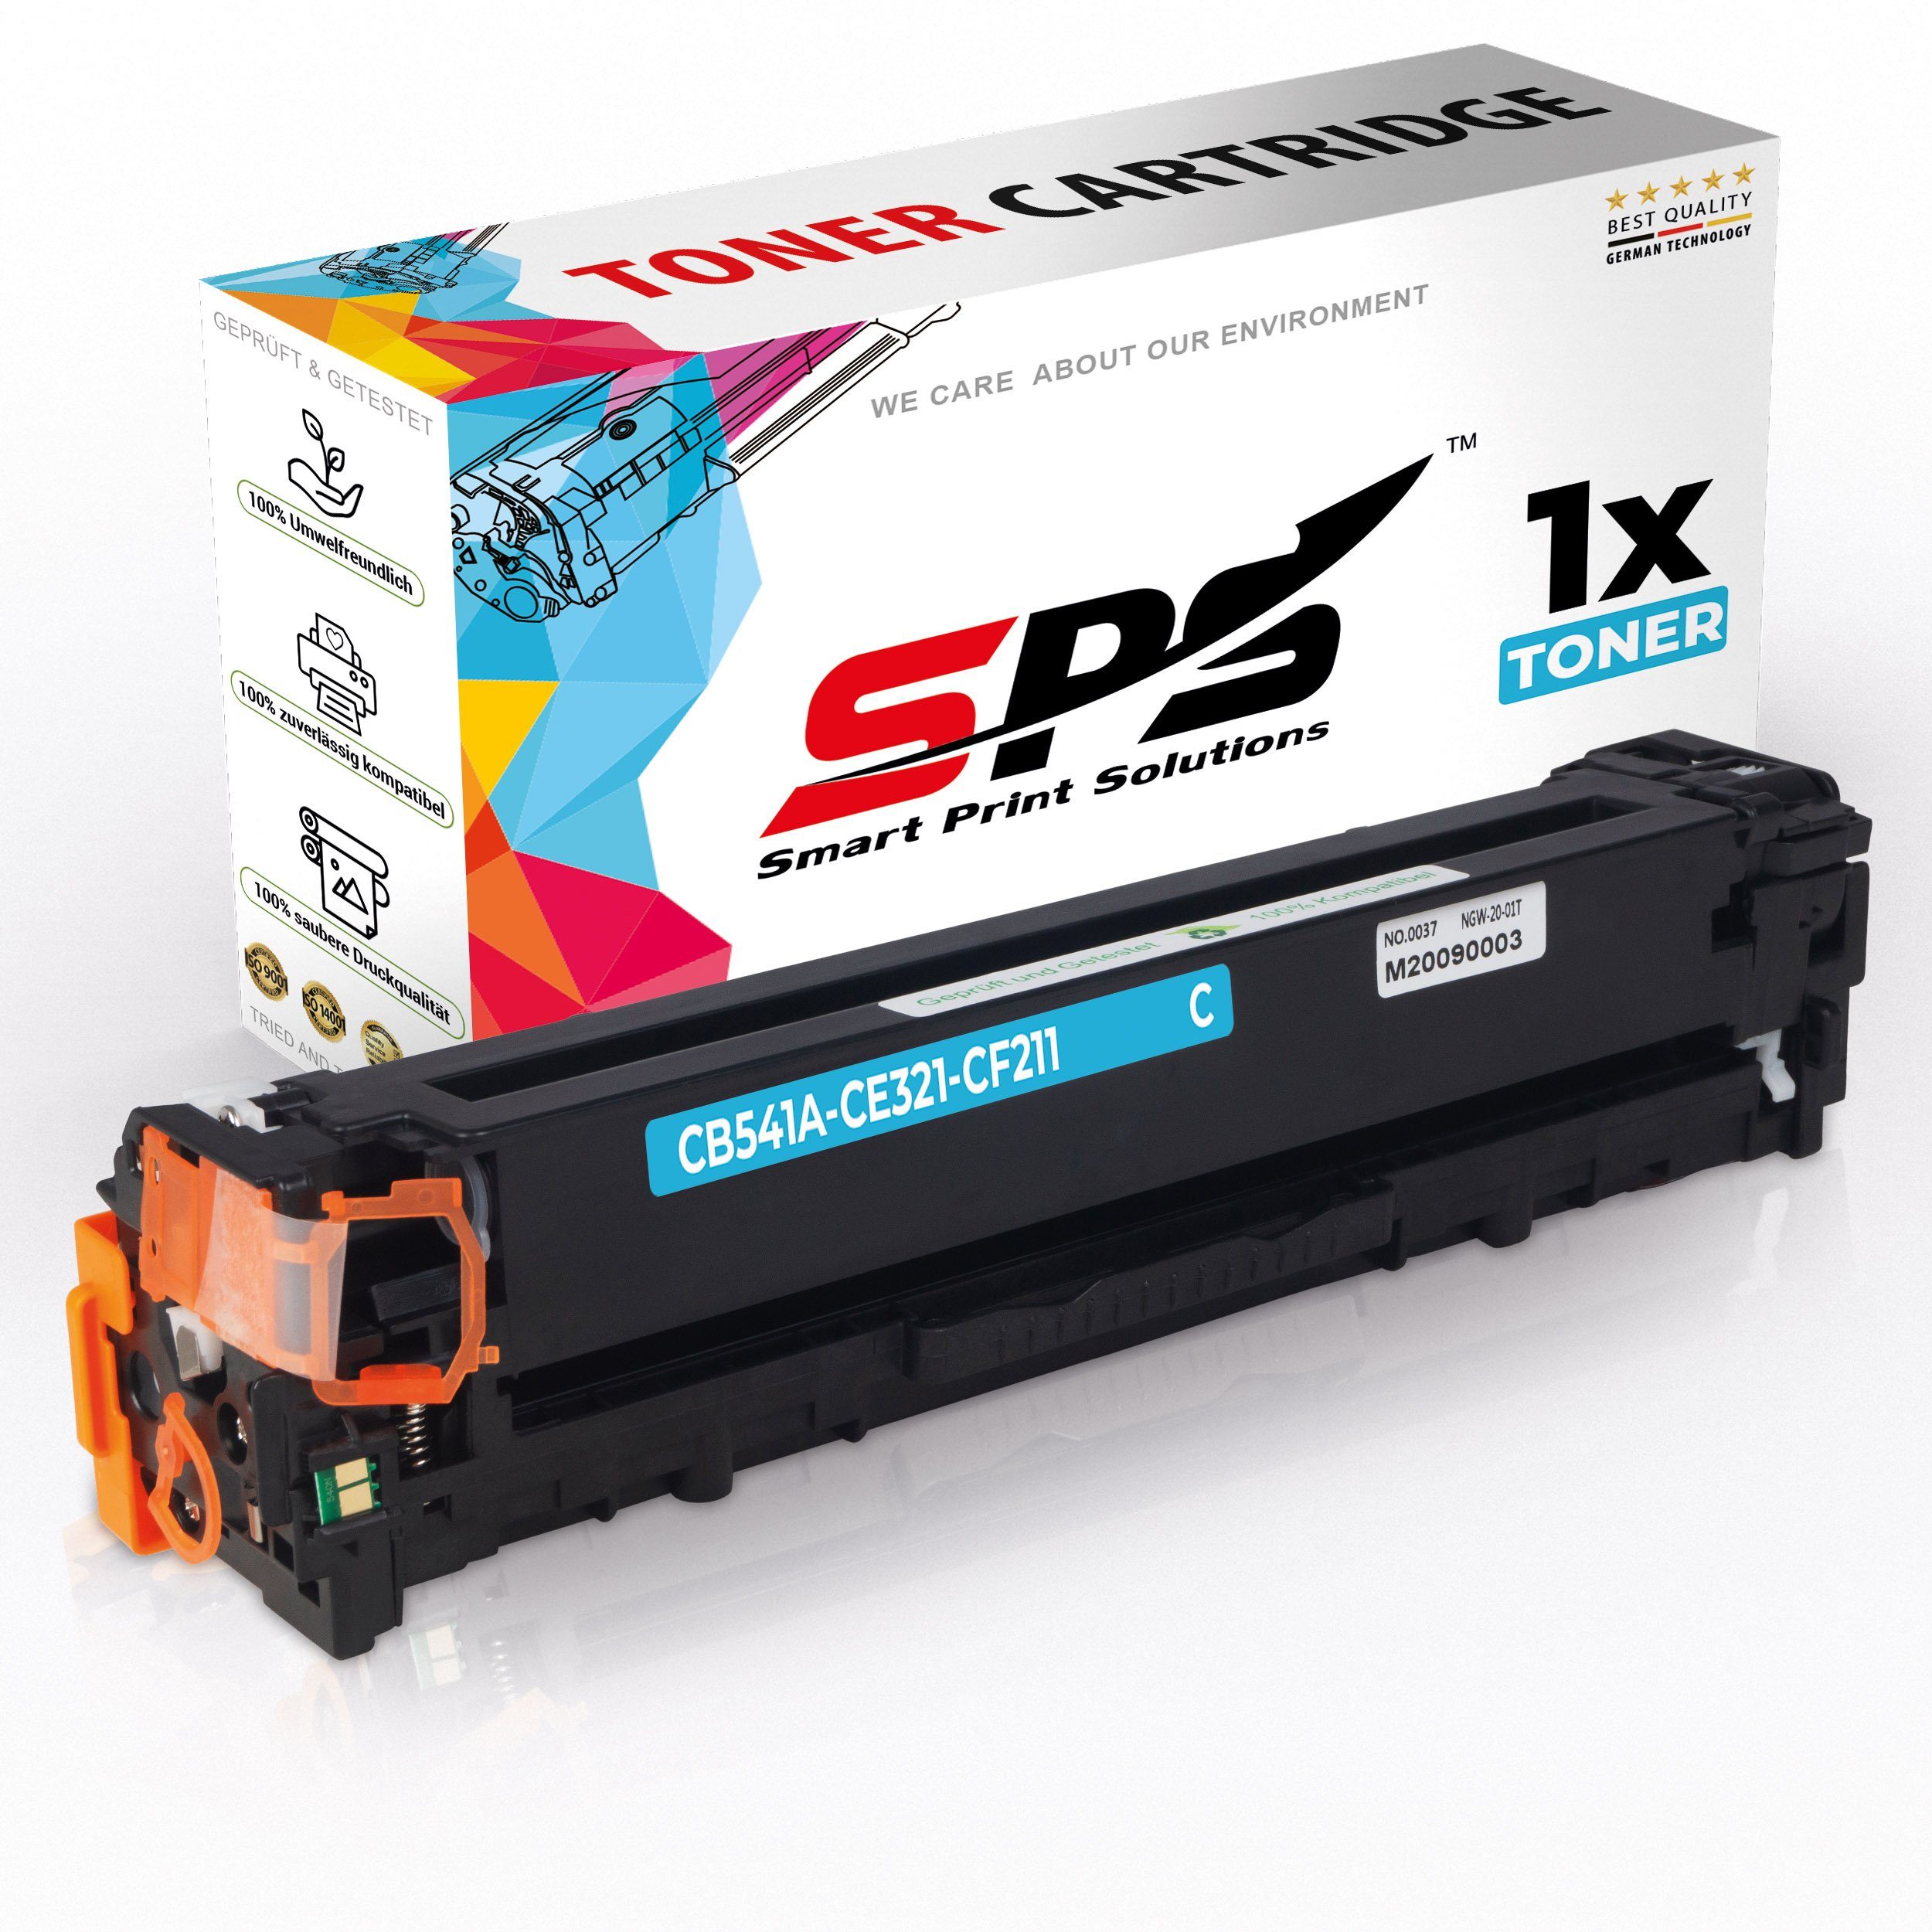 SPS Tonerkartusche Kompatibel für HP Color Laserjet CM 1312 (CB541A/1, (1er Pack, 1x Toner)